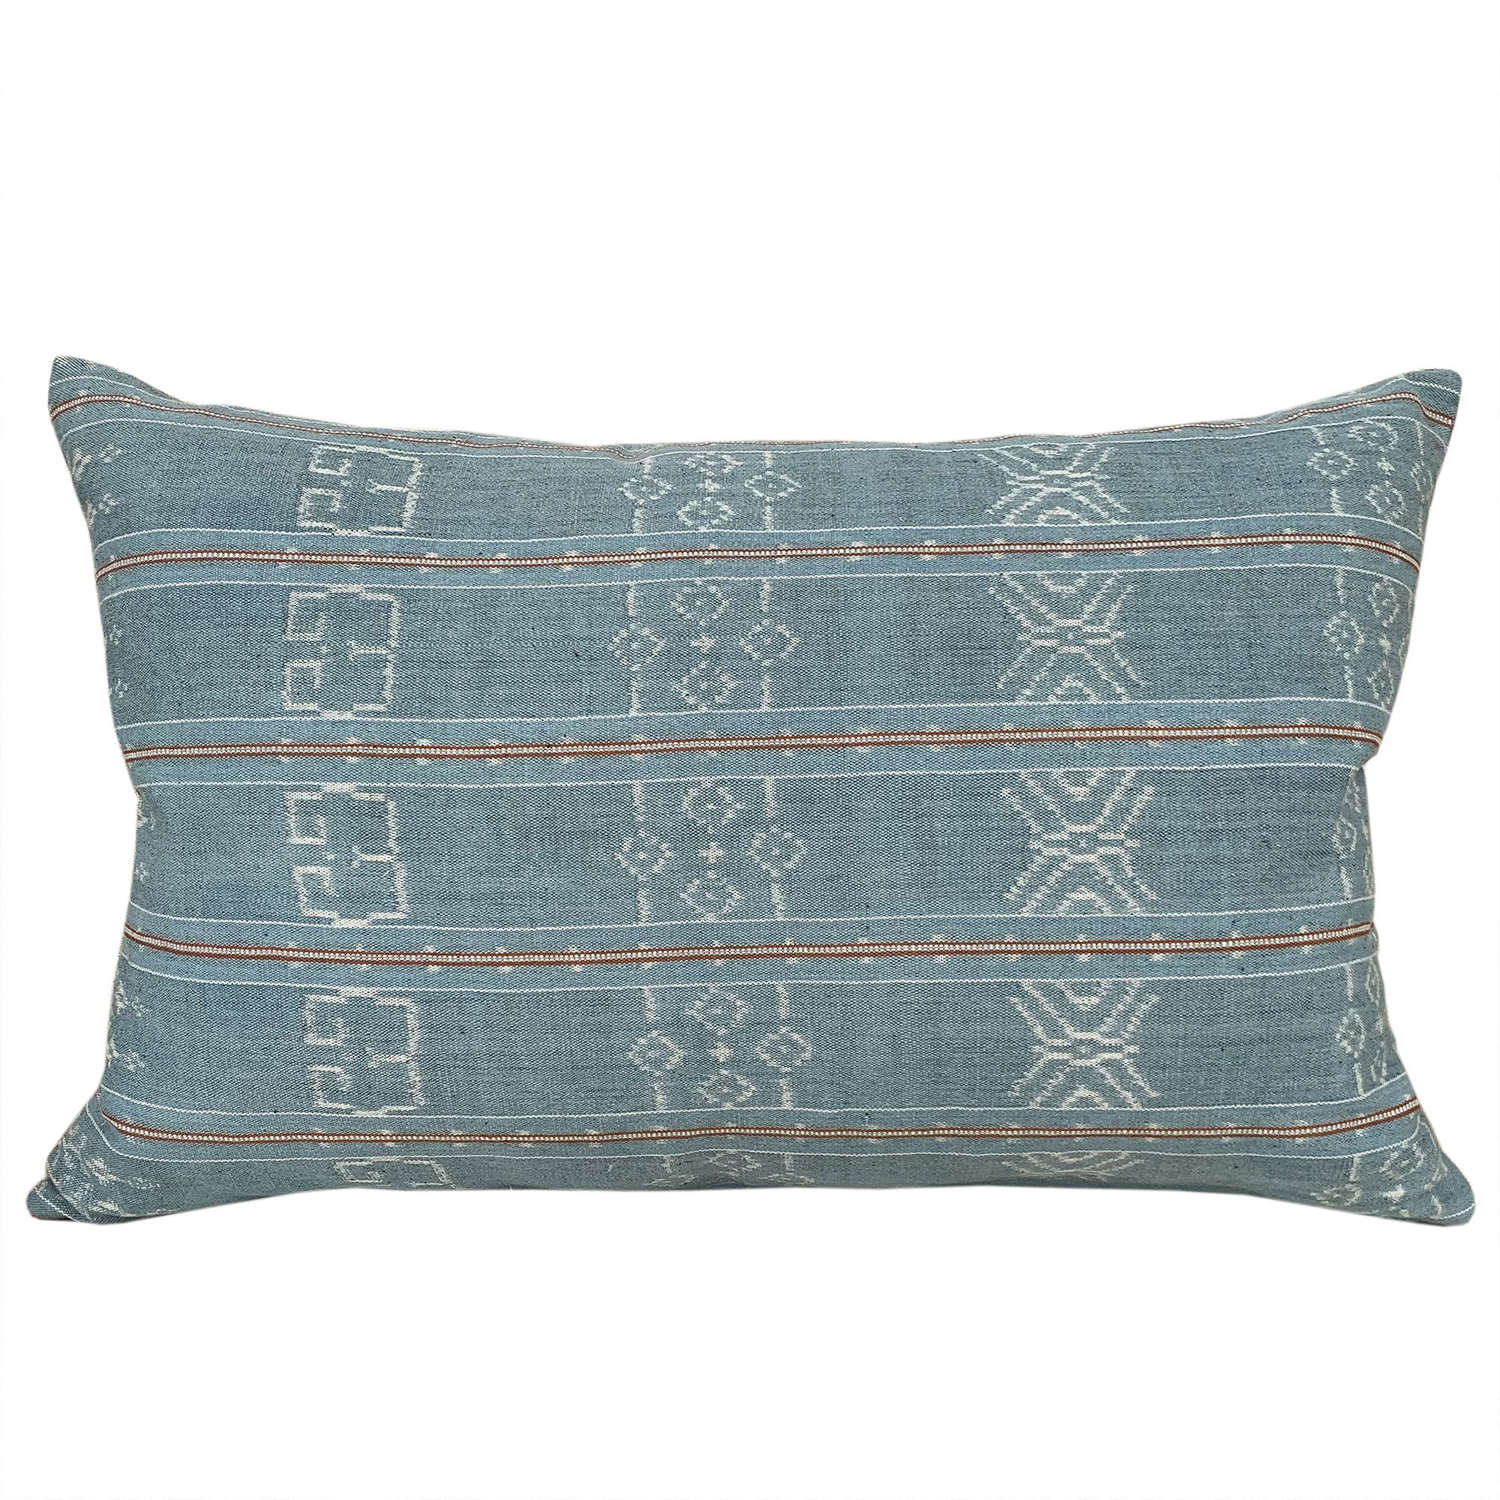 Pale blue Flores ikat cushions